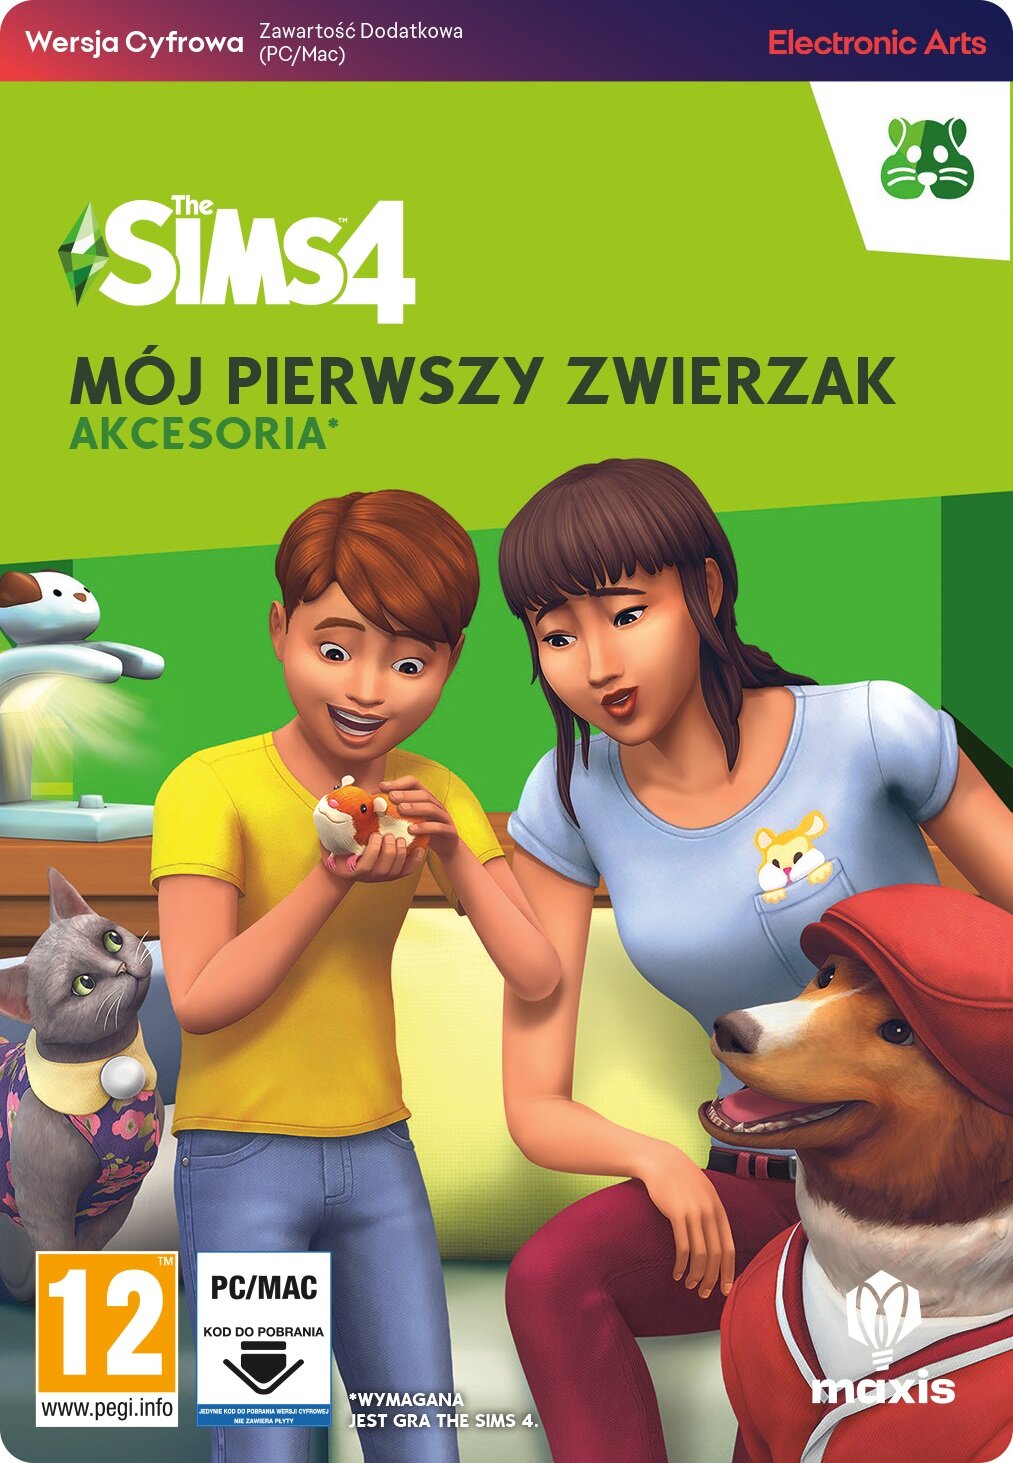 The Sims 4 Kod Na Edycje Sima Kod aktywacyjny The Sims 4: Mój pierwszy zwierzak DLC - niskie ceny i